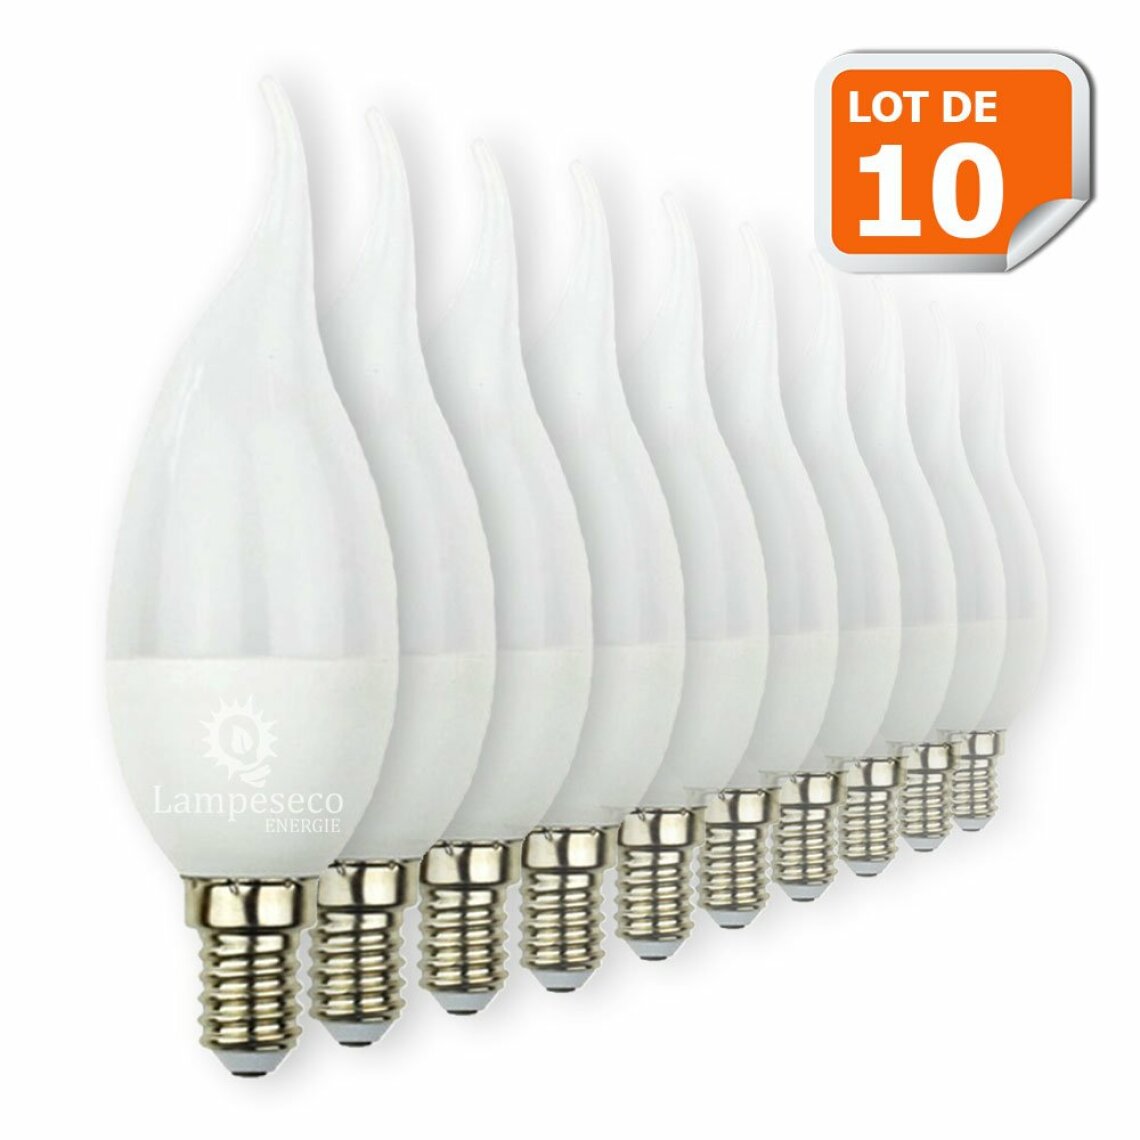 Lampesecoenergie - Lot de 10 Ampoules LED E14 Flamme 5W Eq 40W Blanc Chaud - Ampoules LED